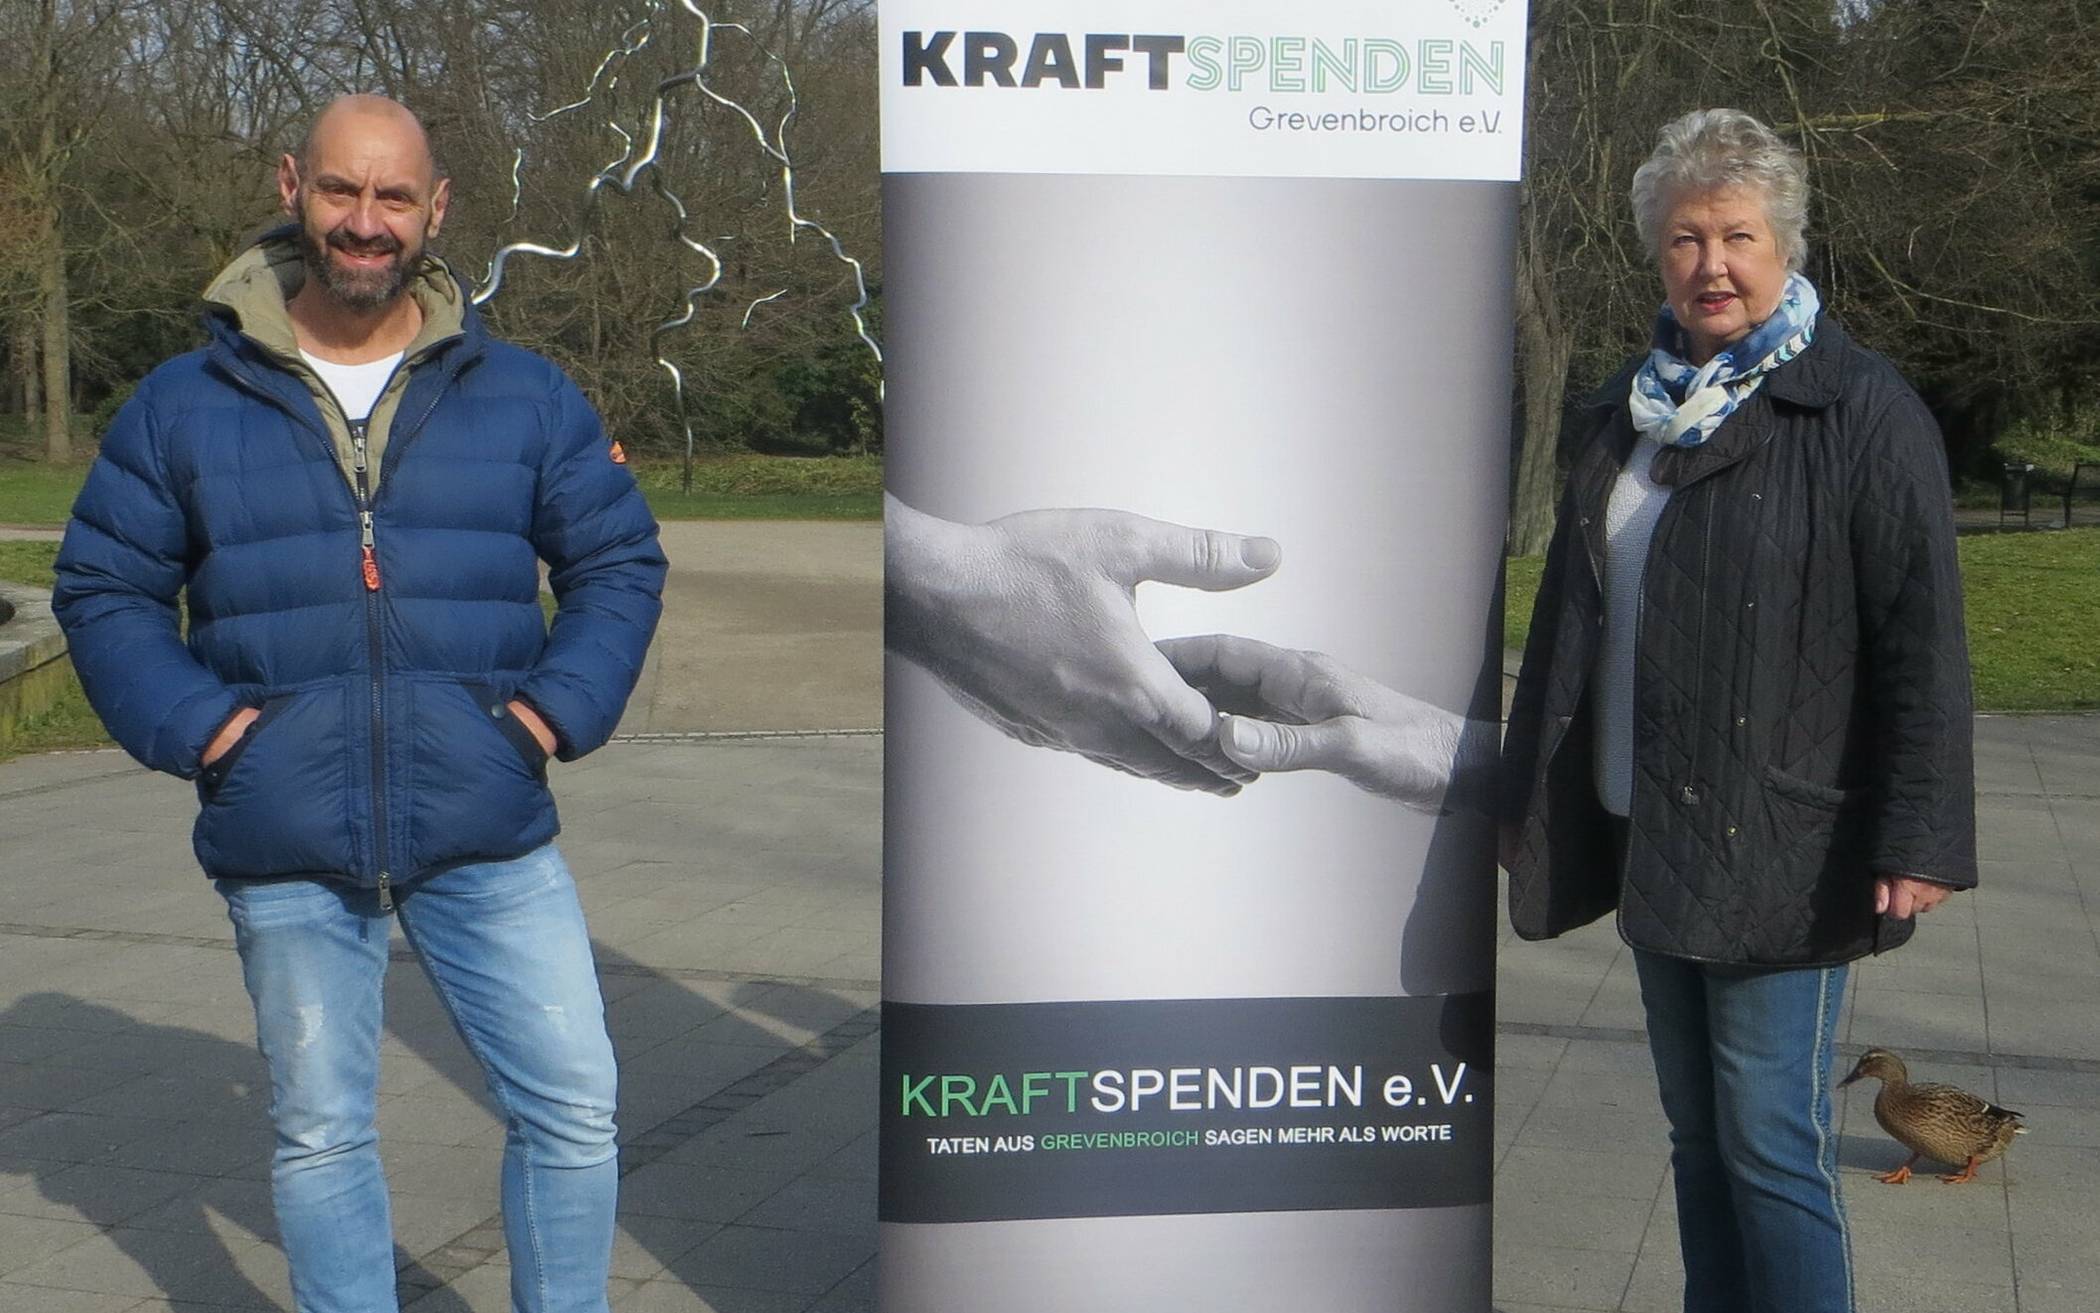  Ulrich Stein und Christiane Matheja vom Verein Kraftspenden Grevenbroich e.V. sind überwältigt von der Hilfsbereitschaft der Grevenbroicher.  